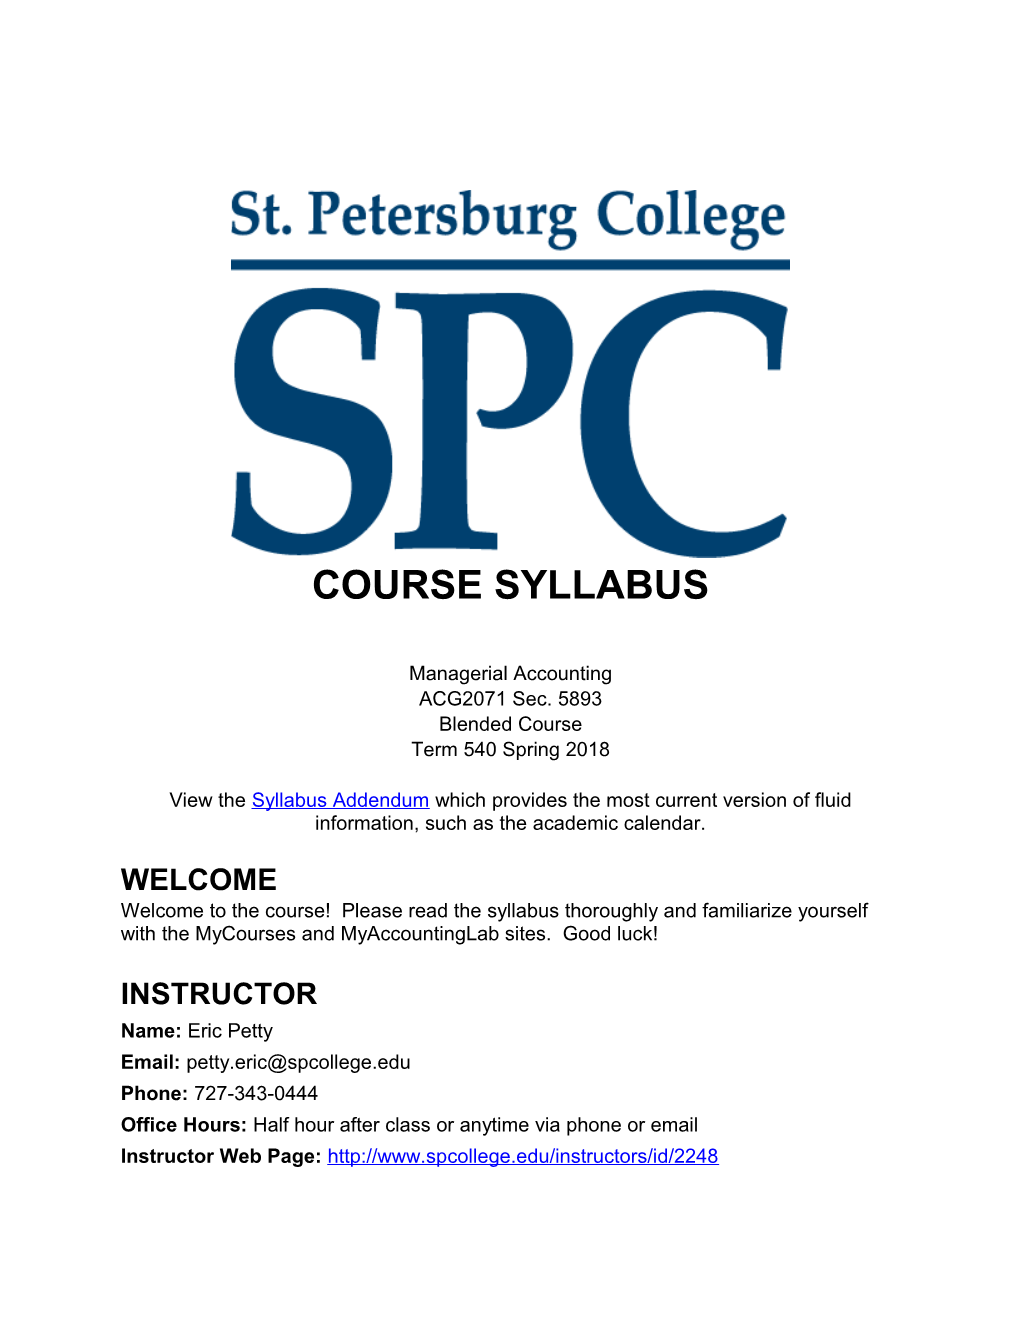 Course Syllabus s36